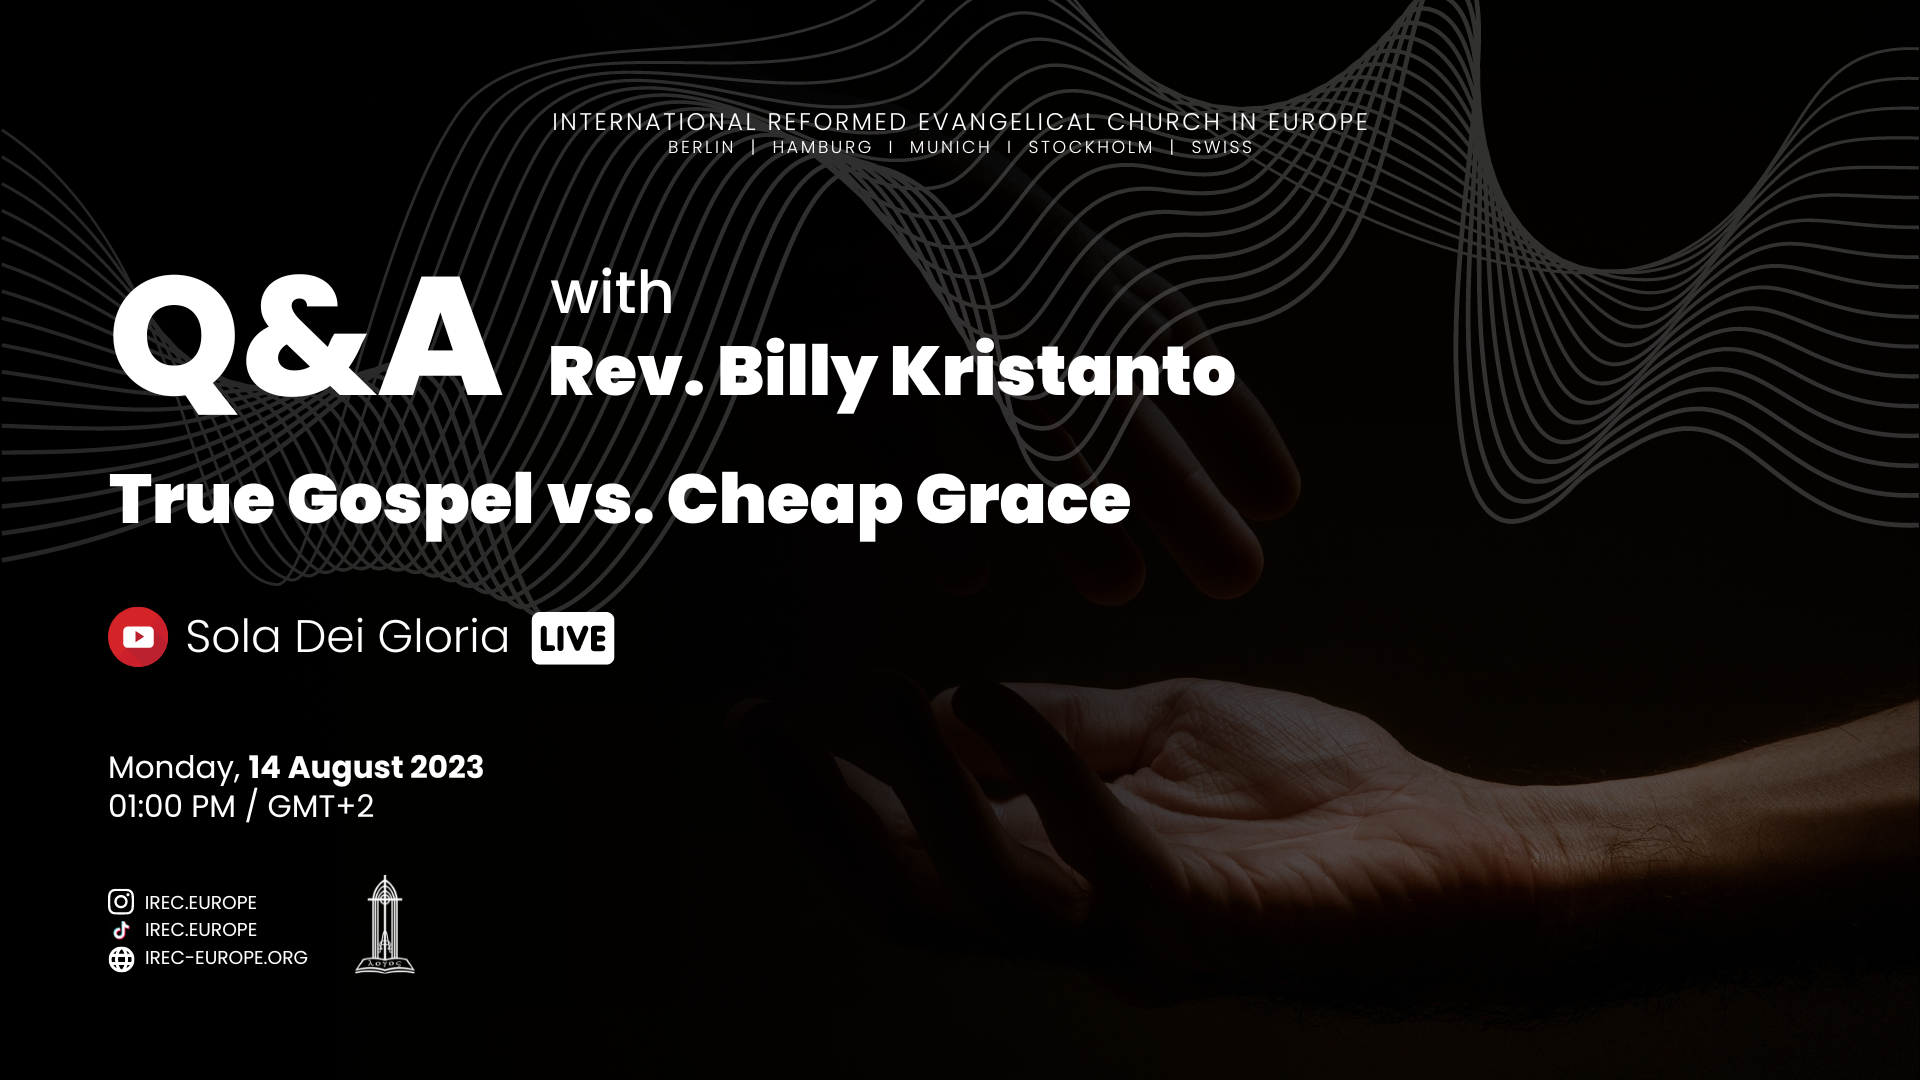 Q&A: True Gospel vs. Cheap Grace